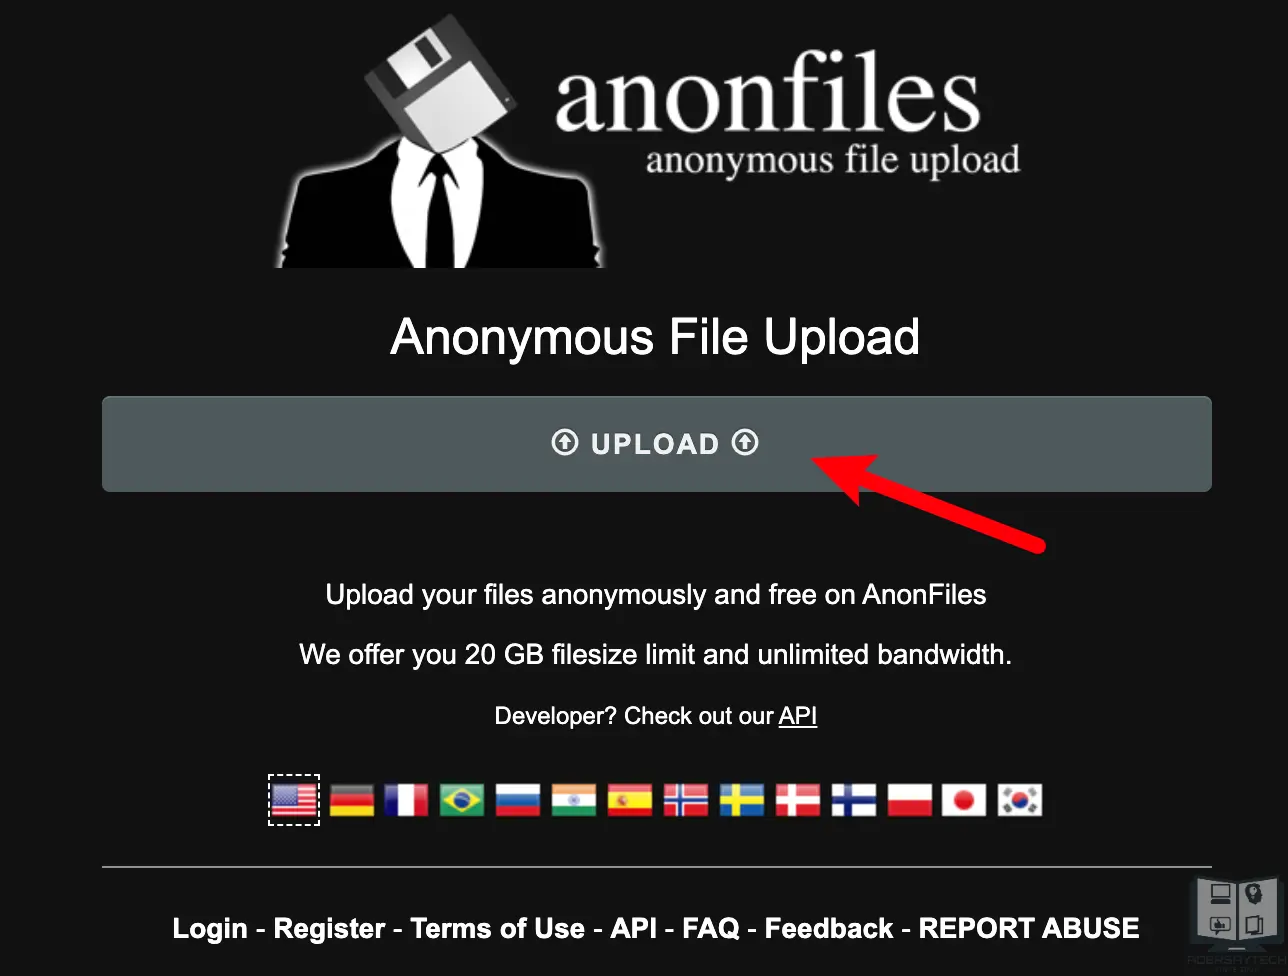 匿名的免費雲端空間 AnonFiles，單檔案最大支援 20GB，不限速不刪檔！ 7